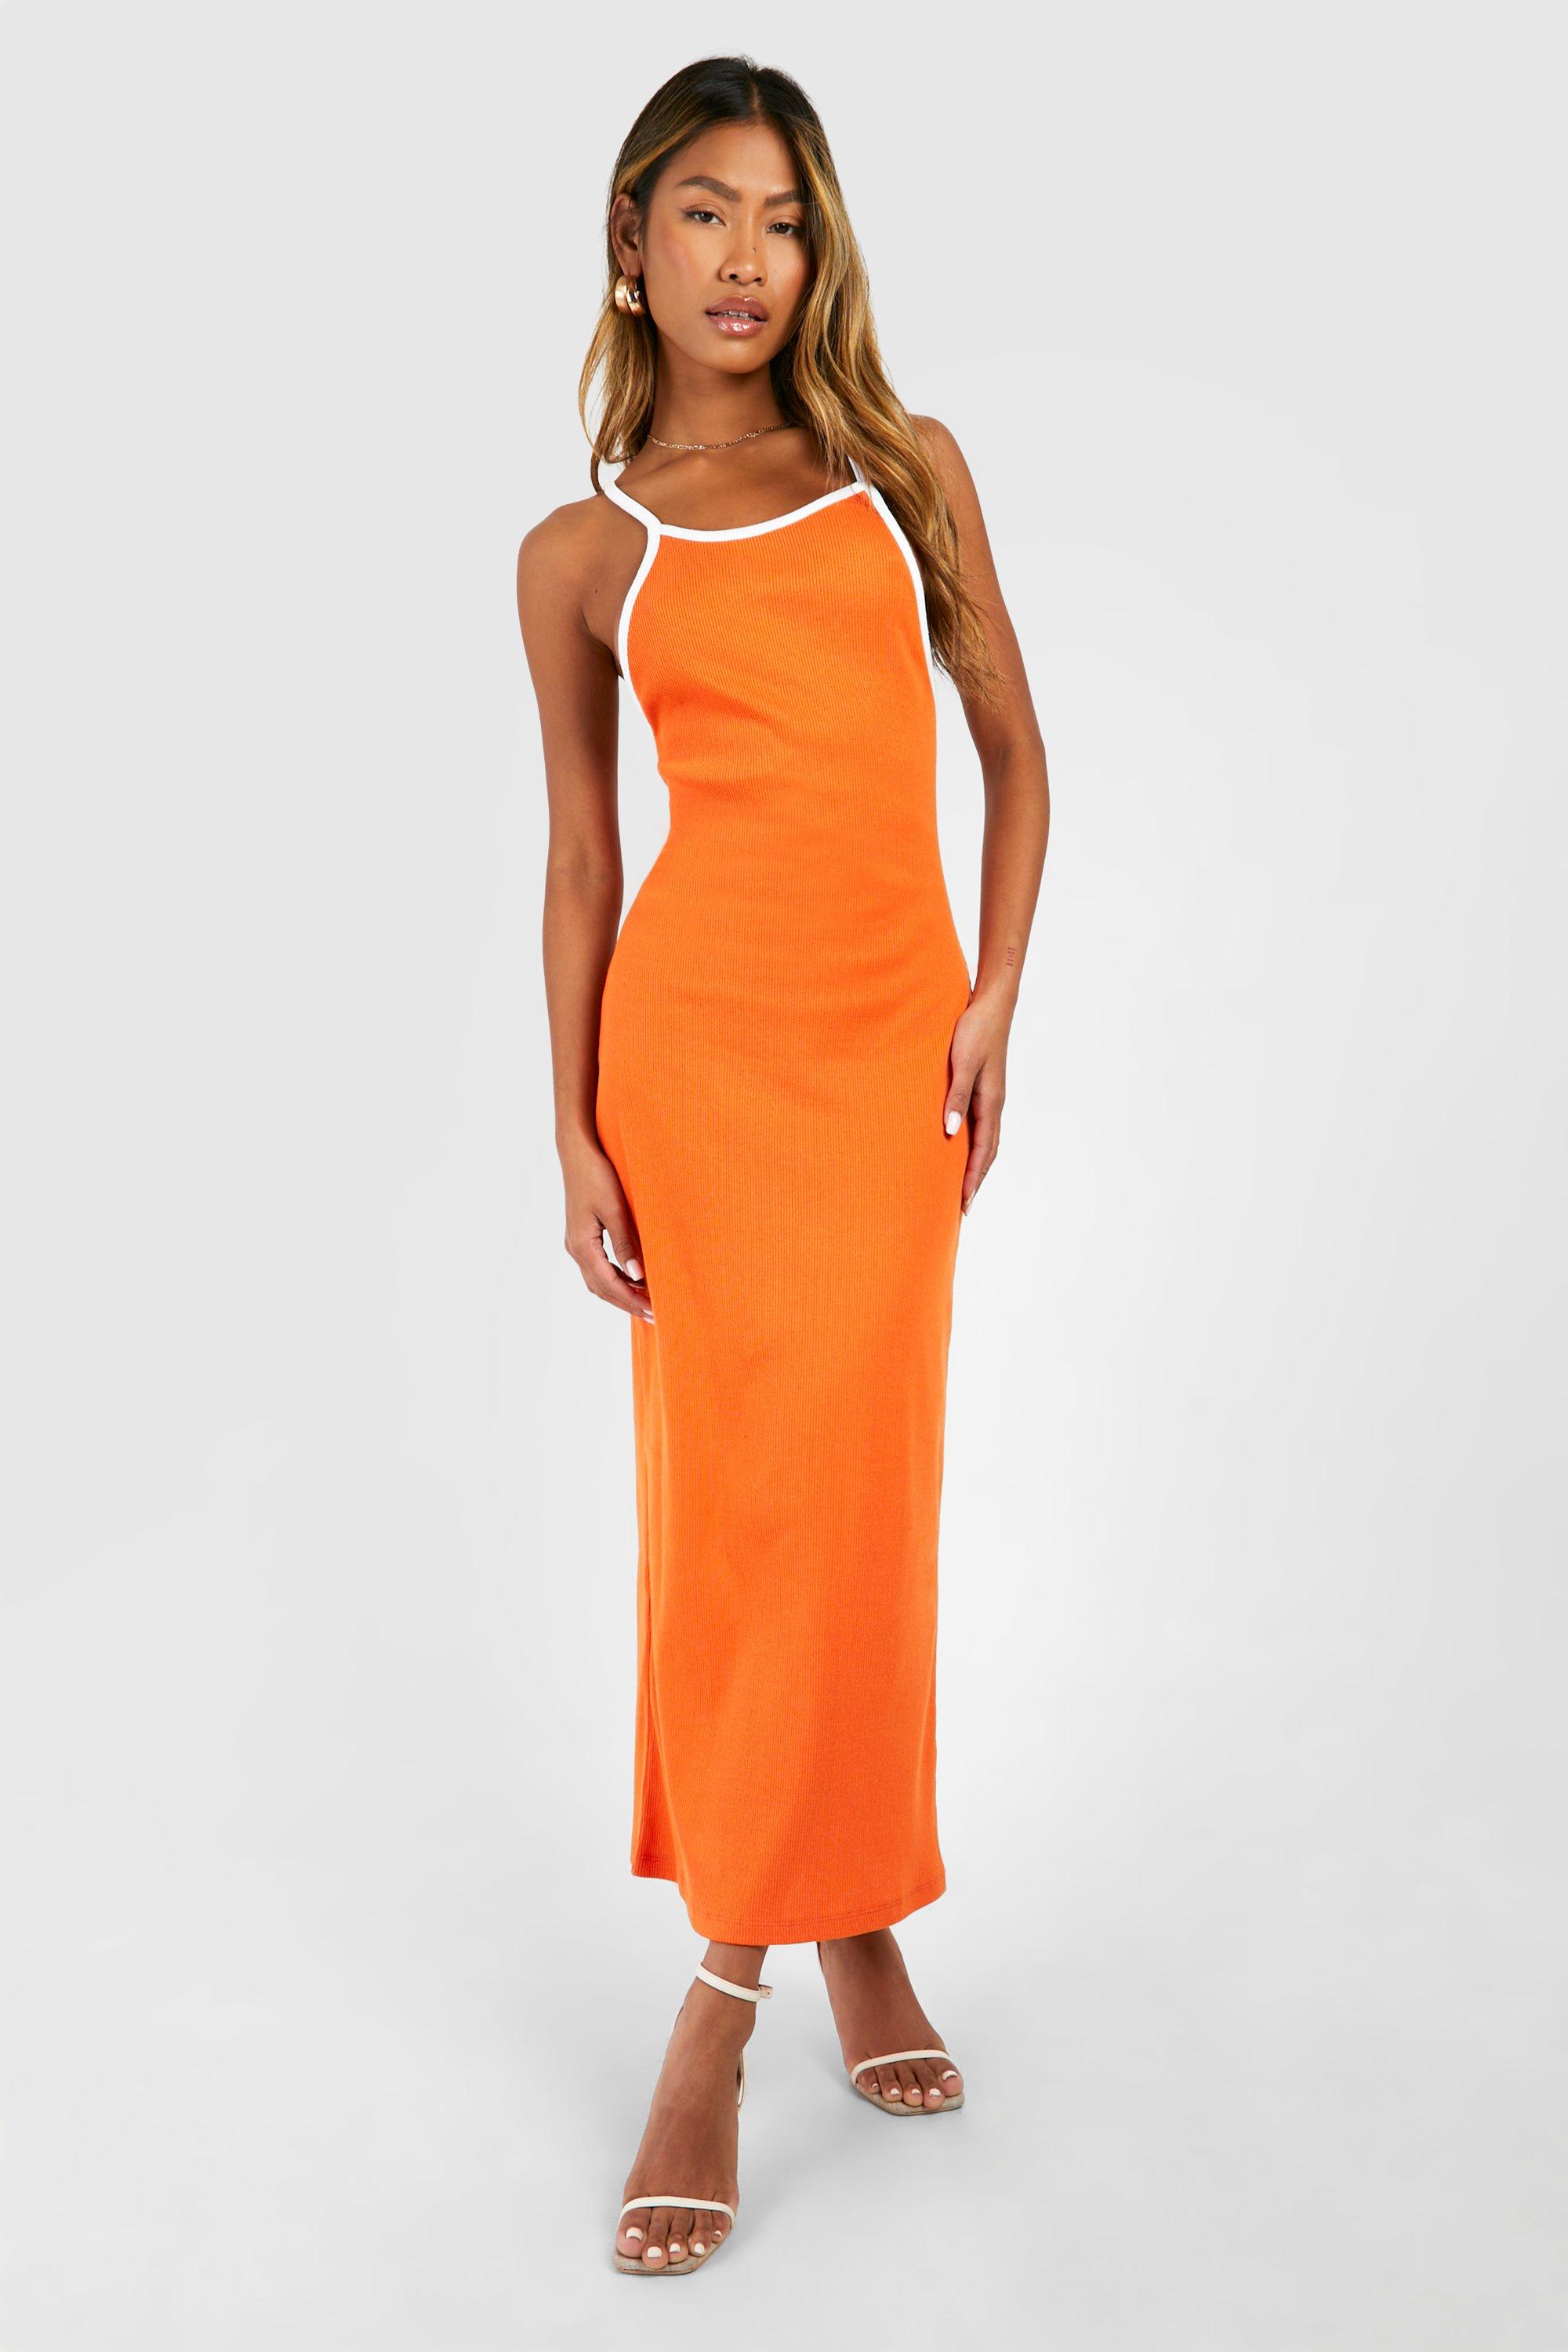 Image of Contrast Binding Low Scoop Racer Midaxi Dress, Arancio